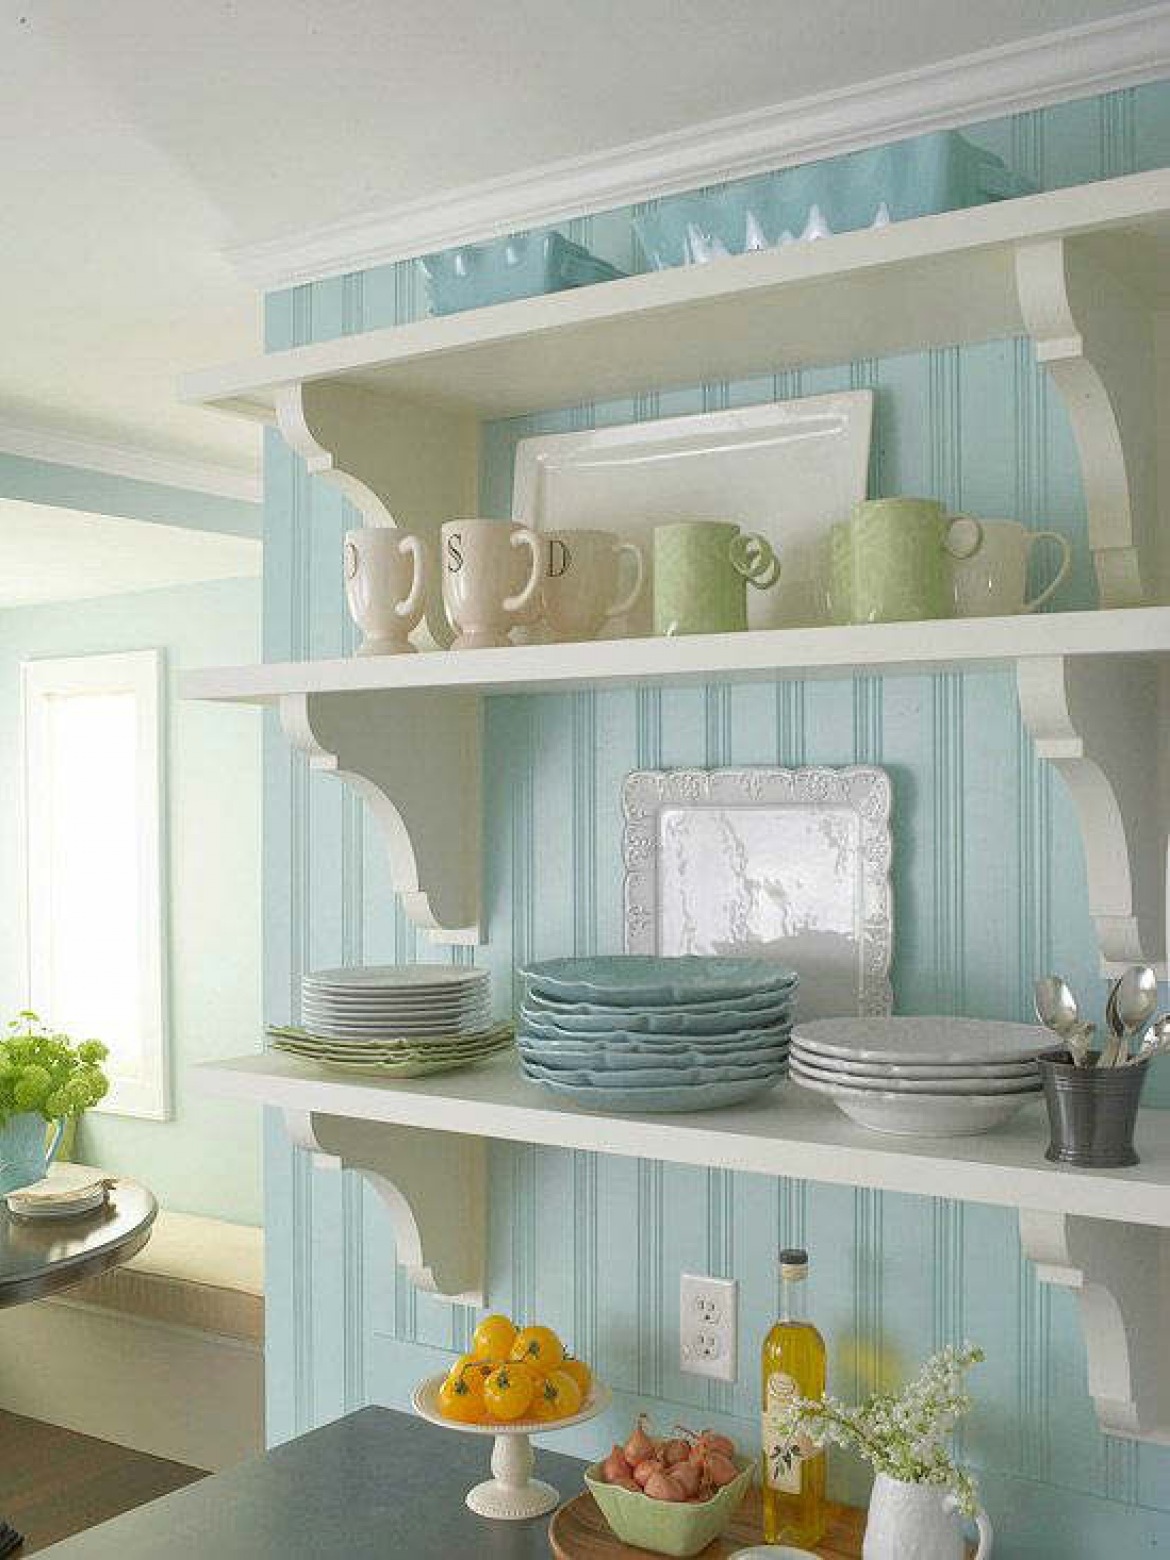 Białe ;półki na niebieskiej tapecie na scianie w kuchni (20166)